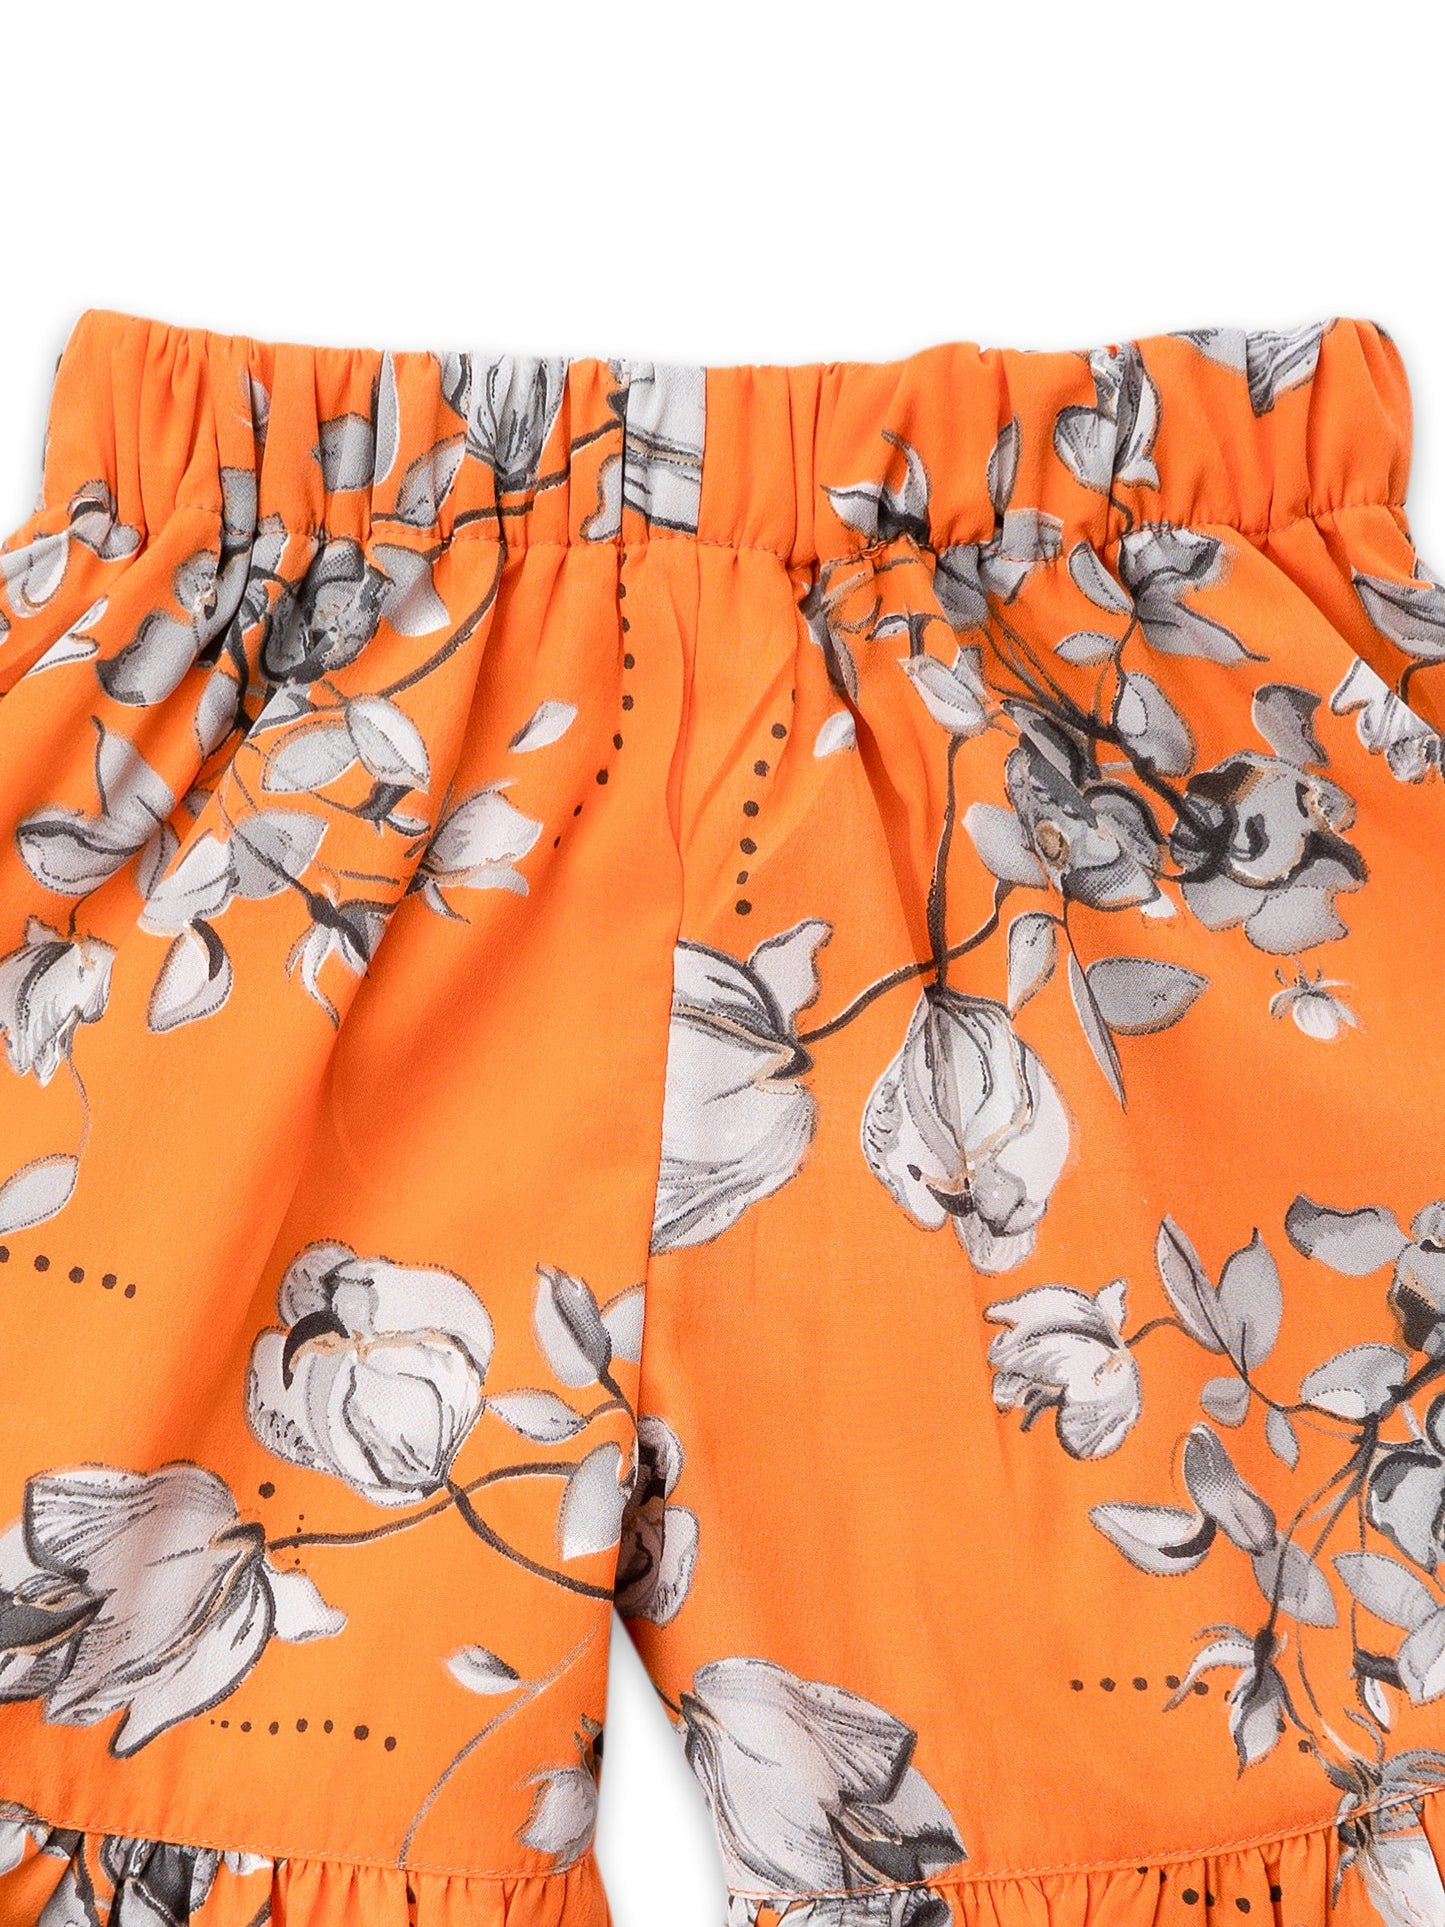 Girls Orange Floral Top and Short Set